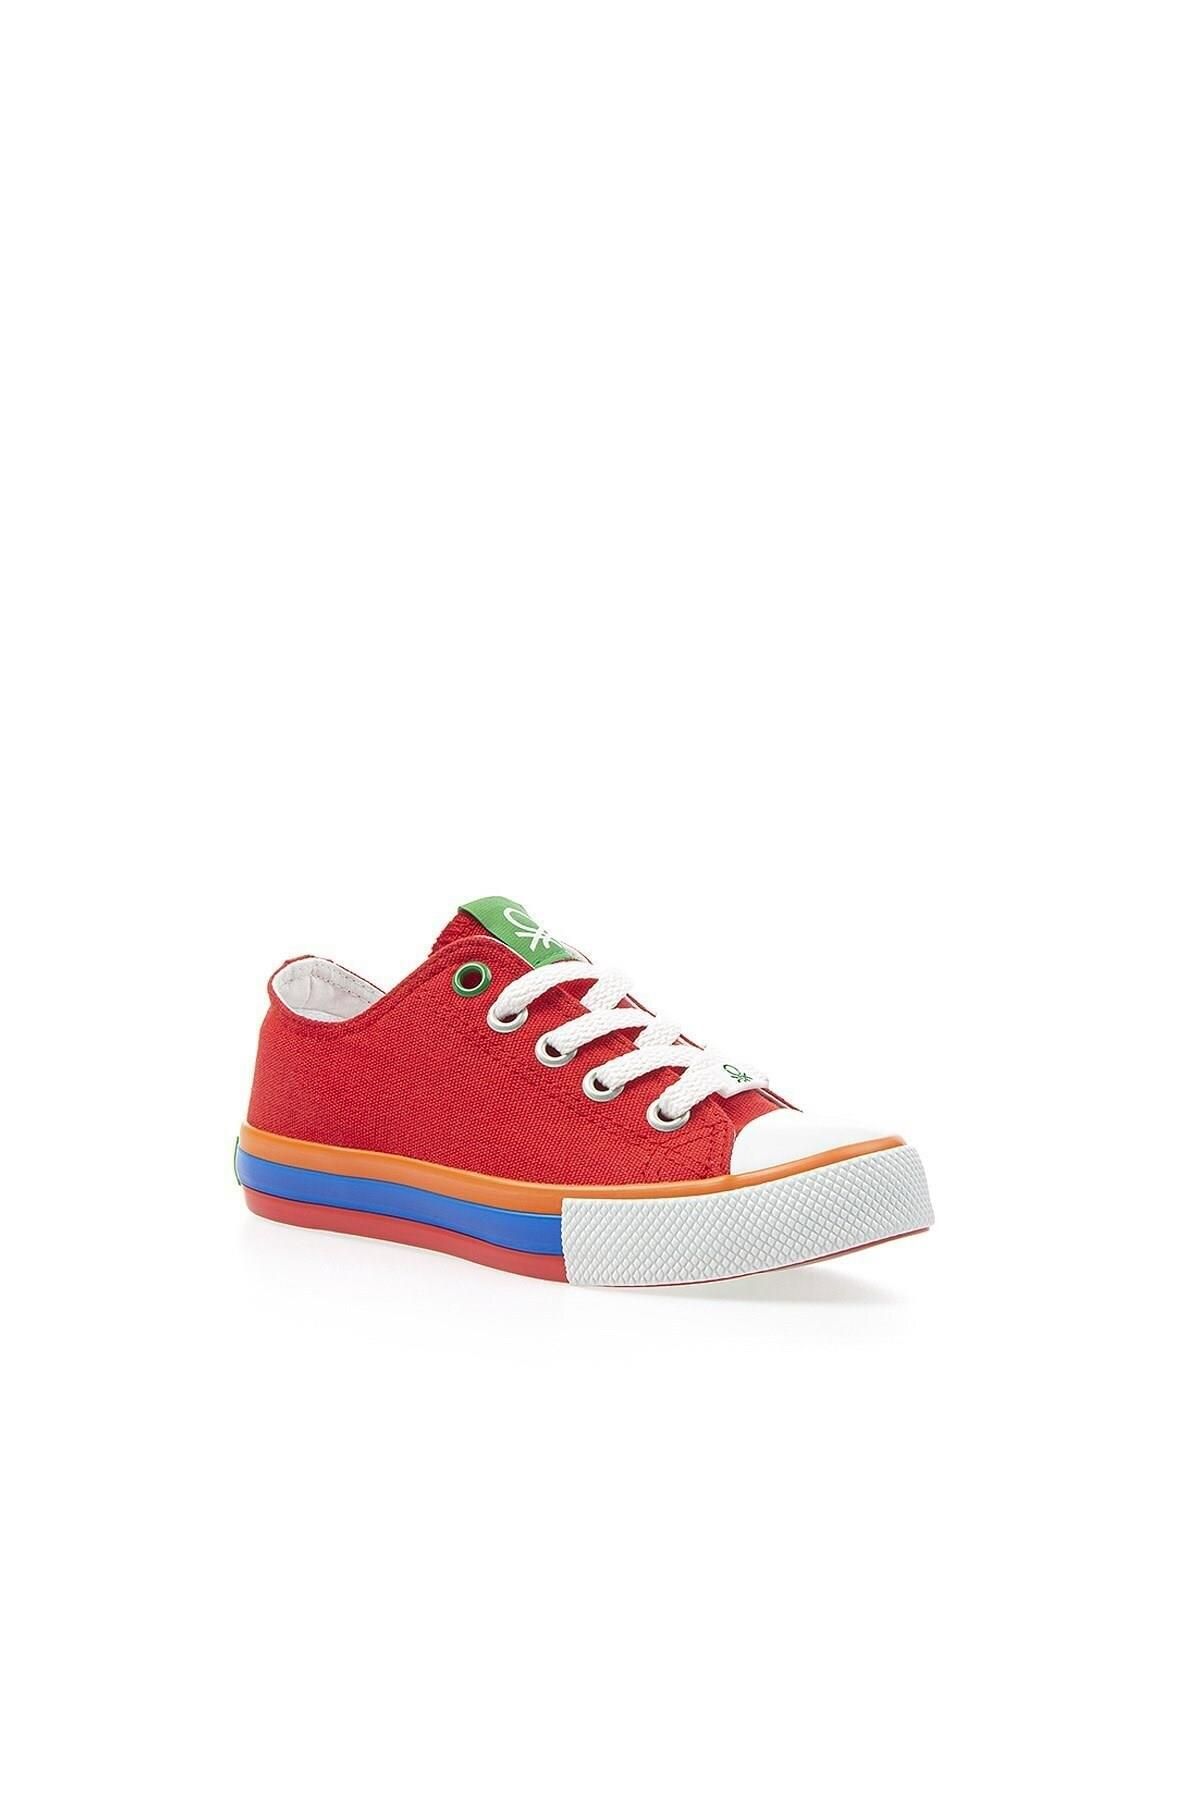 Benetton Filet Kırmızı Çocuk Spor Ayakkabı